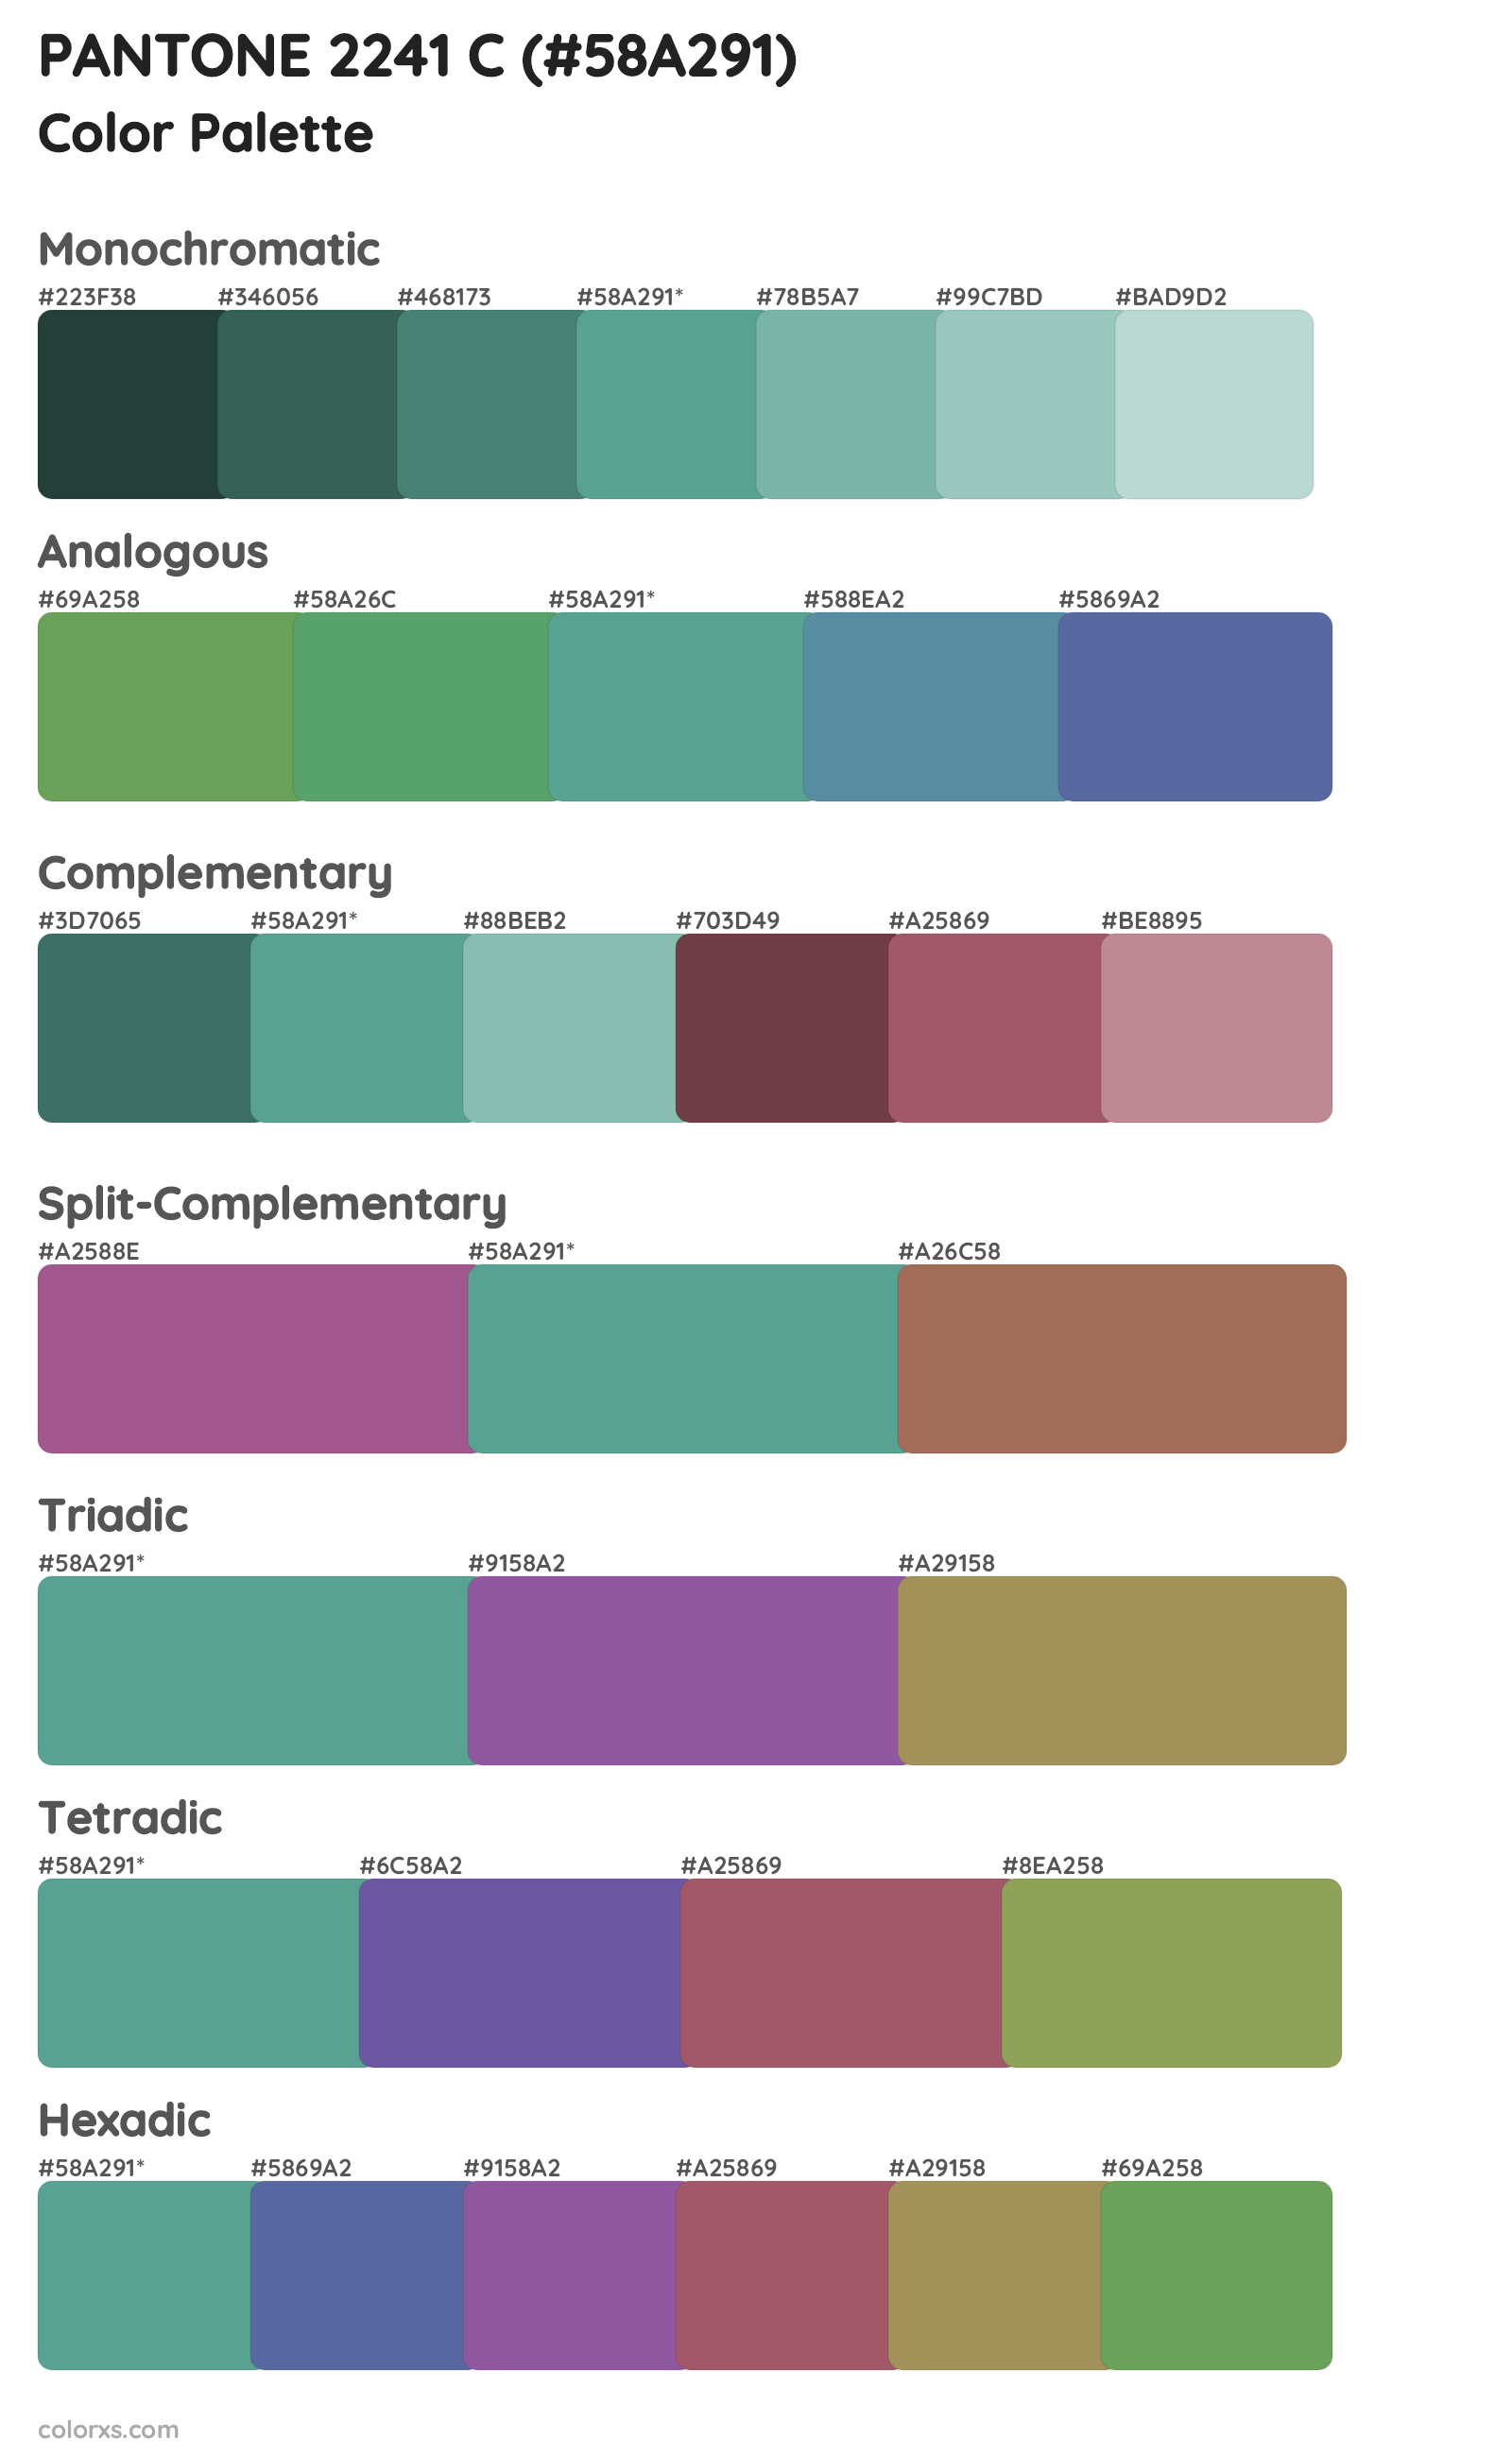 PANTONE 2241 C Color Scheme Palettes